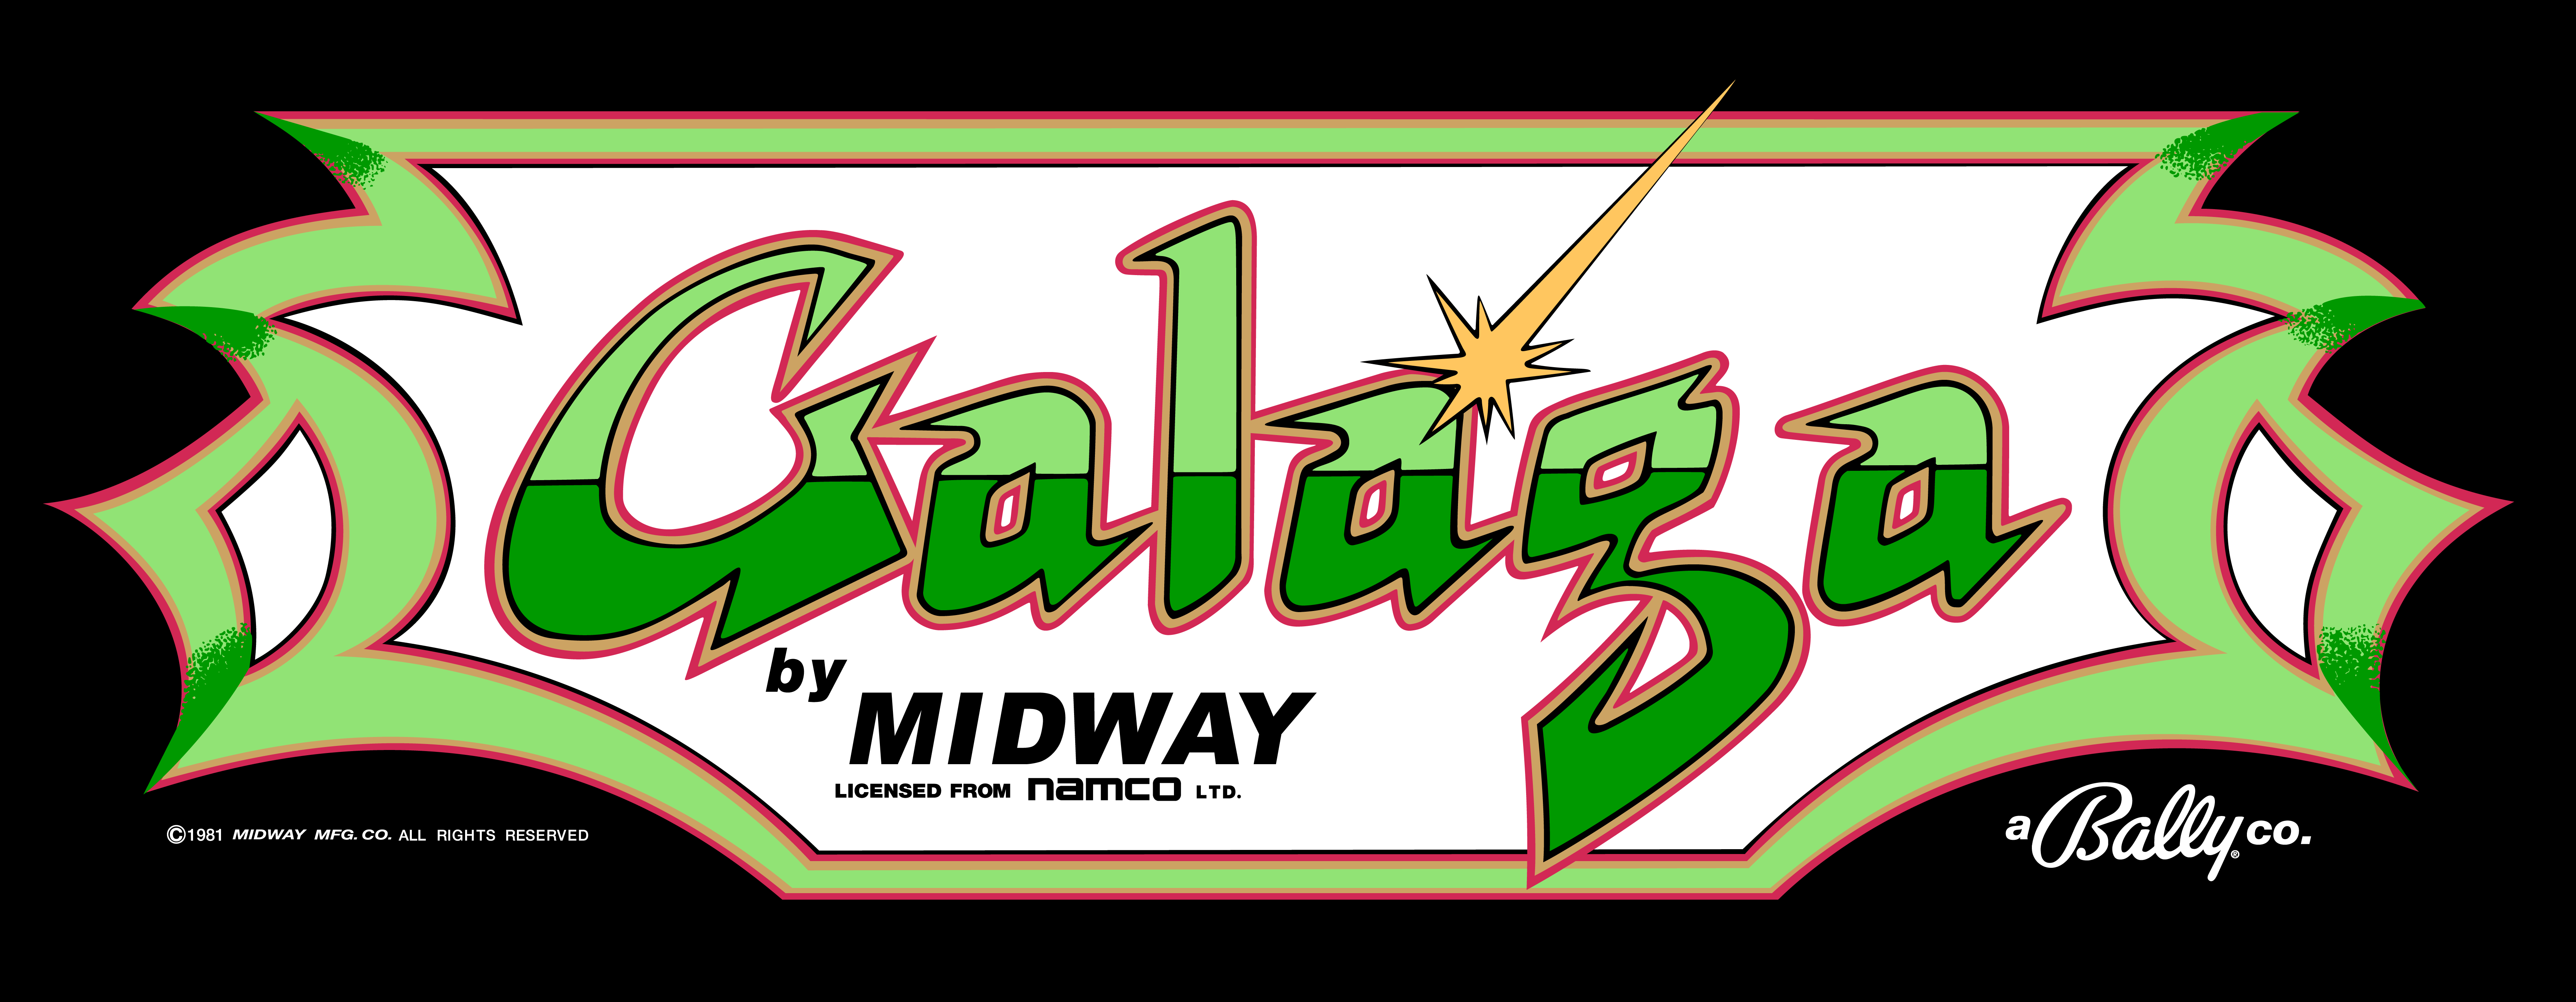 Bally Midway Logo - Galaga Logo | Midway #logo #80s #Galaga #game #retro #childhood ...